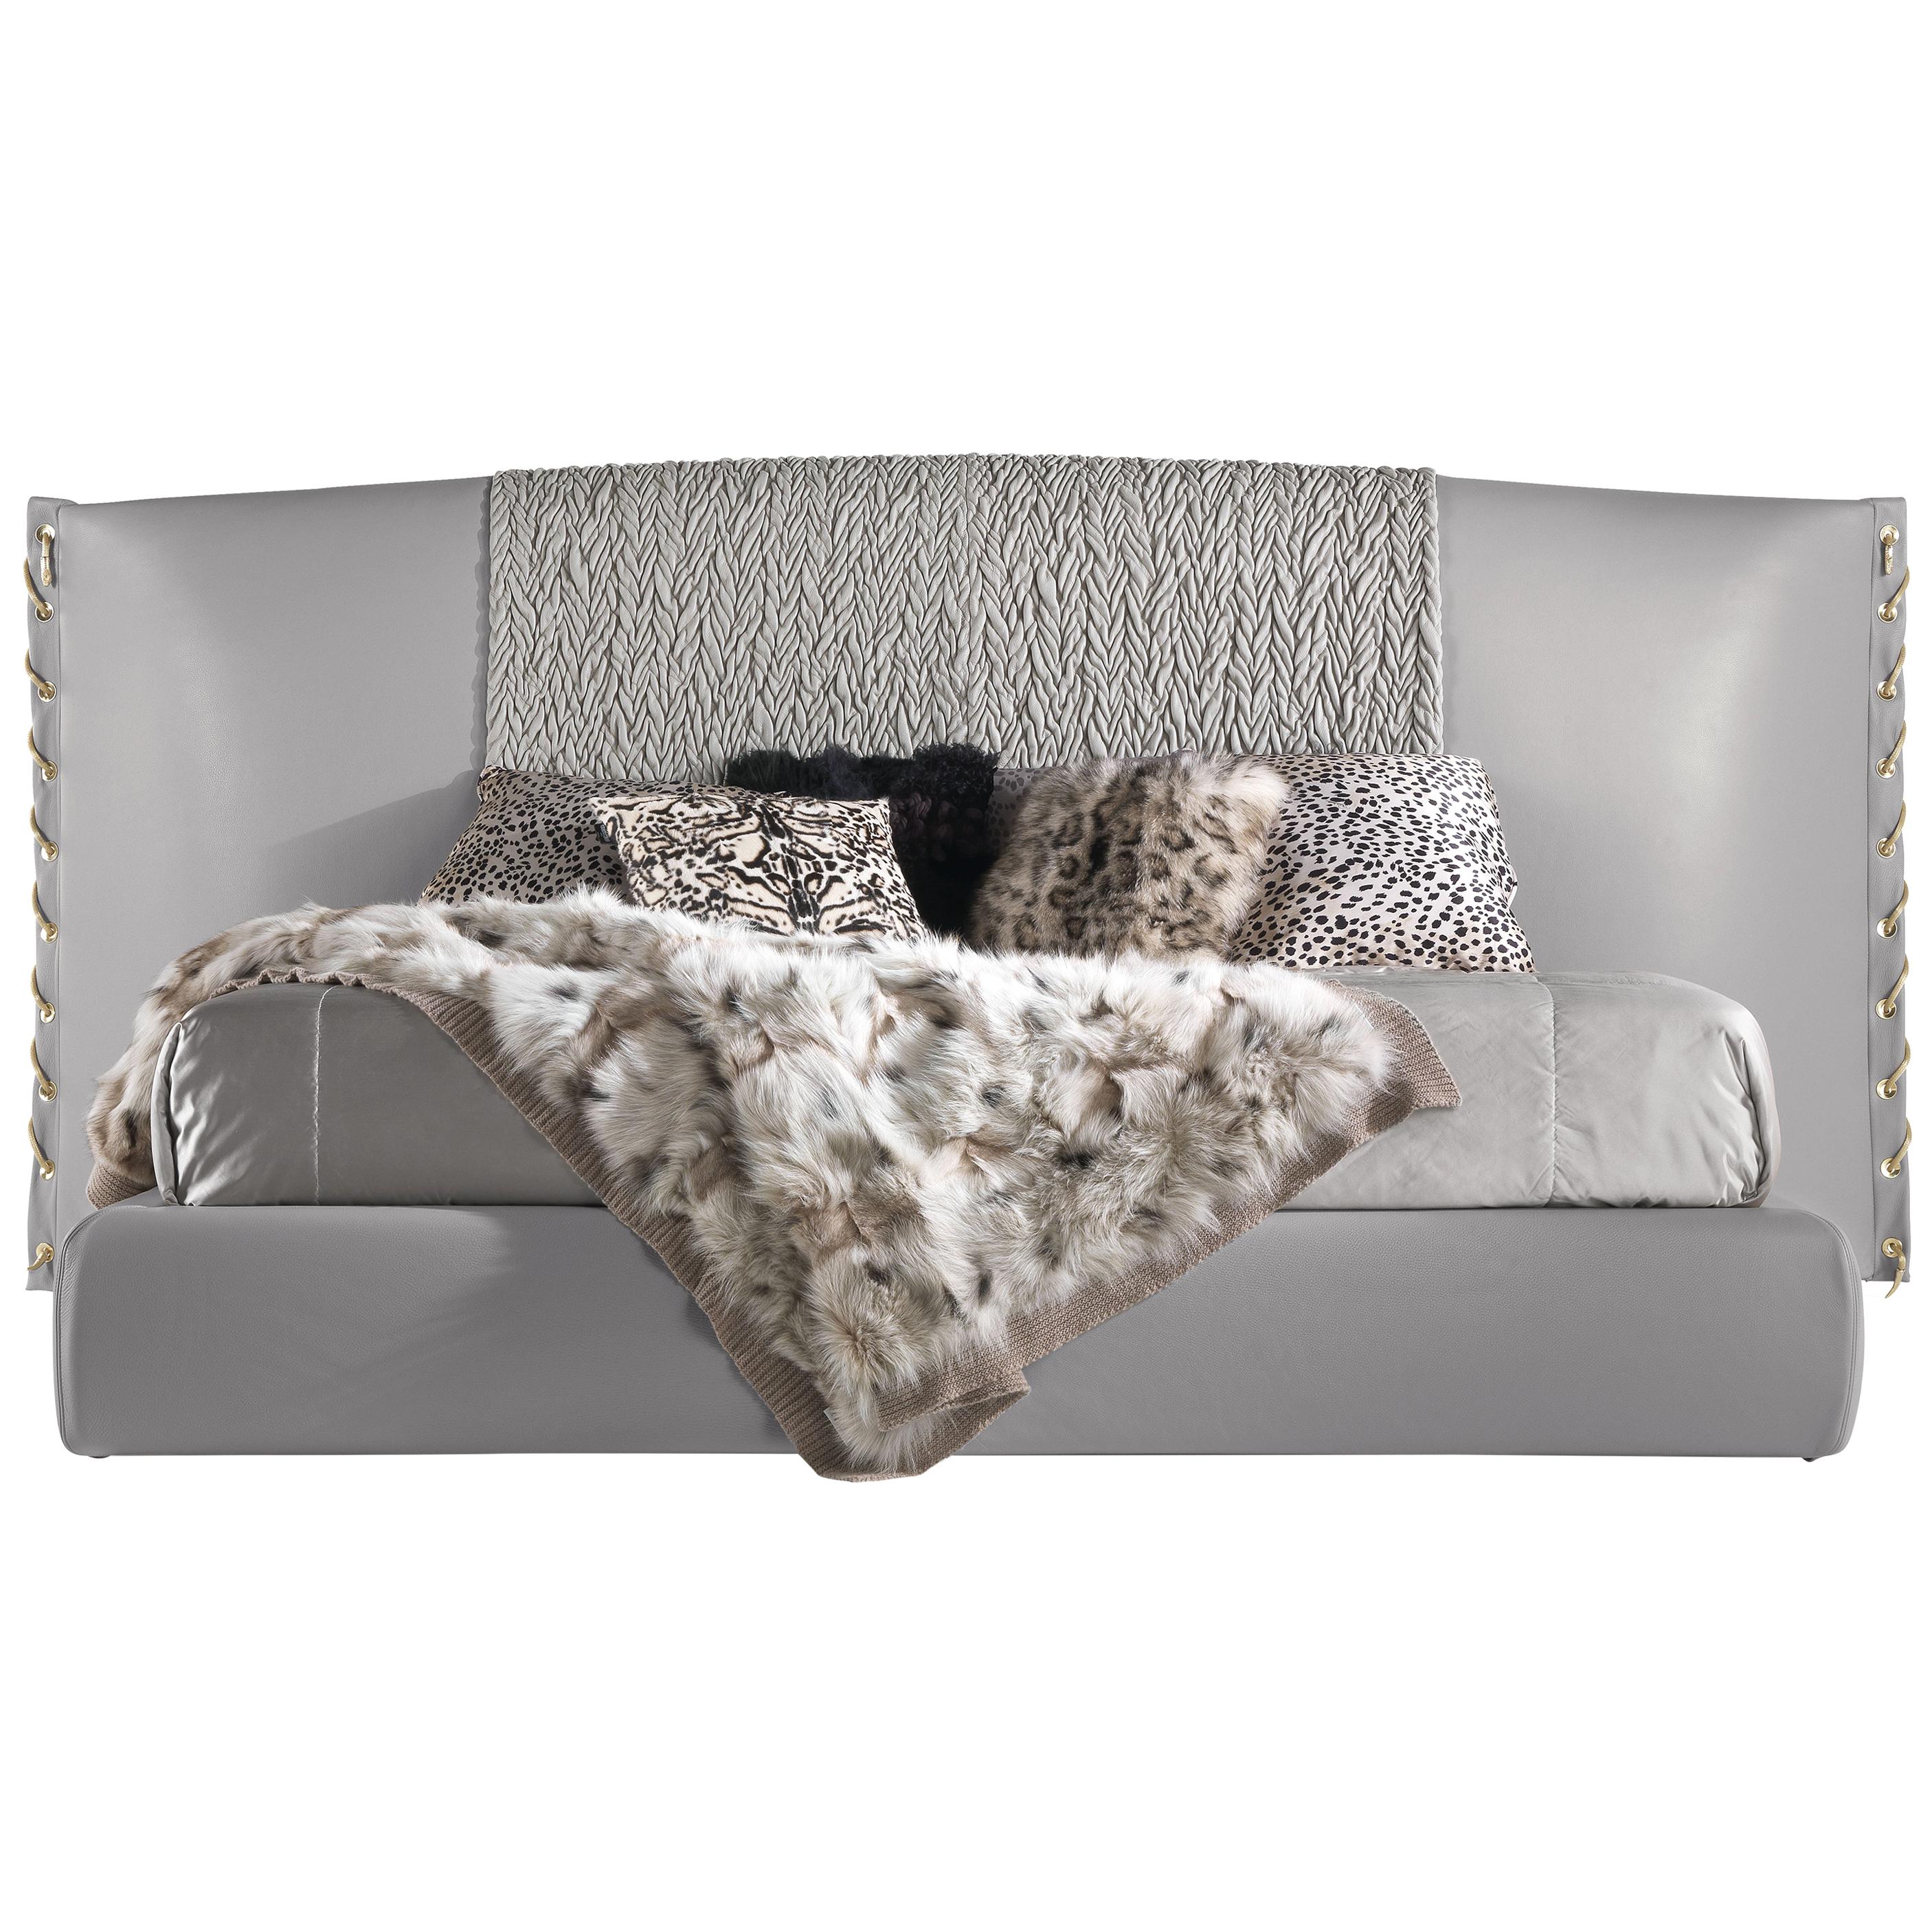 Nilo-Bett aus Leder des 21. Jahrhunderts von Roberto Cavalli Home Interiors